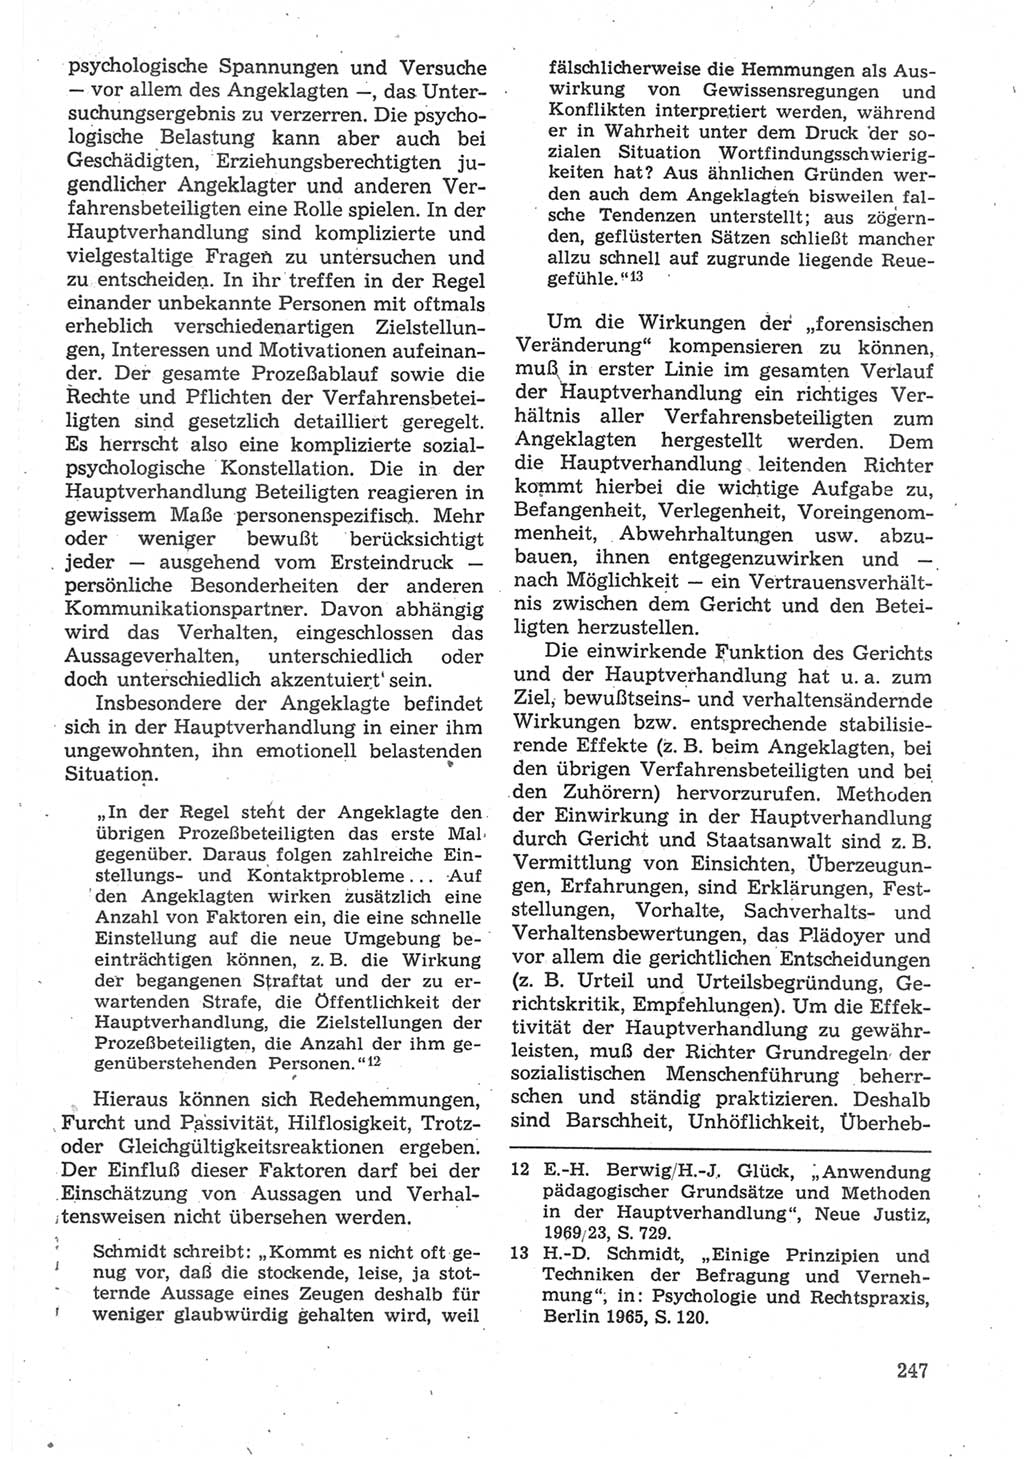 Strafverfahrensrecht [Deutsche Demokratische Republik (DDR)], Lehrbuch 1987, Seite 247 (Strafverf.-R. DDR Lb. 1987, S. 247)